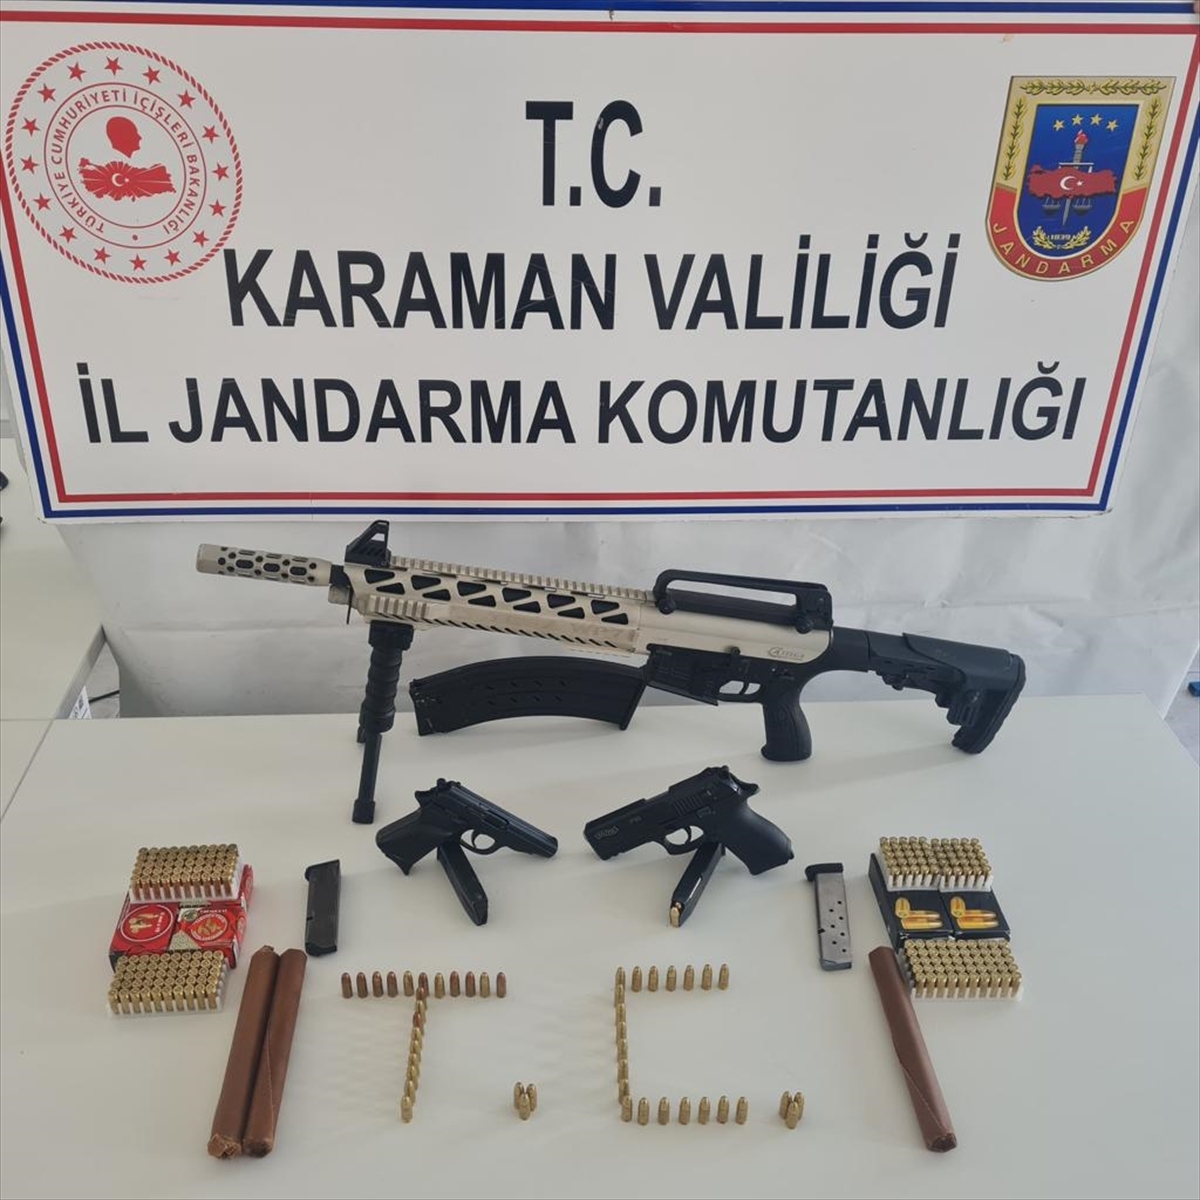 Karaman'da Silah Kaçakçılığı Operasyonunda 2 Kişi Yakalandı